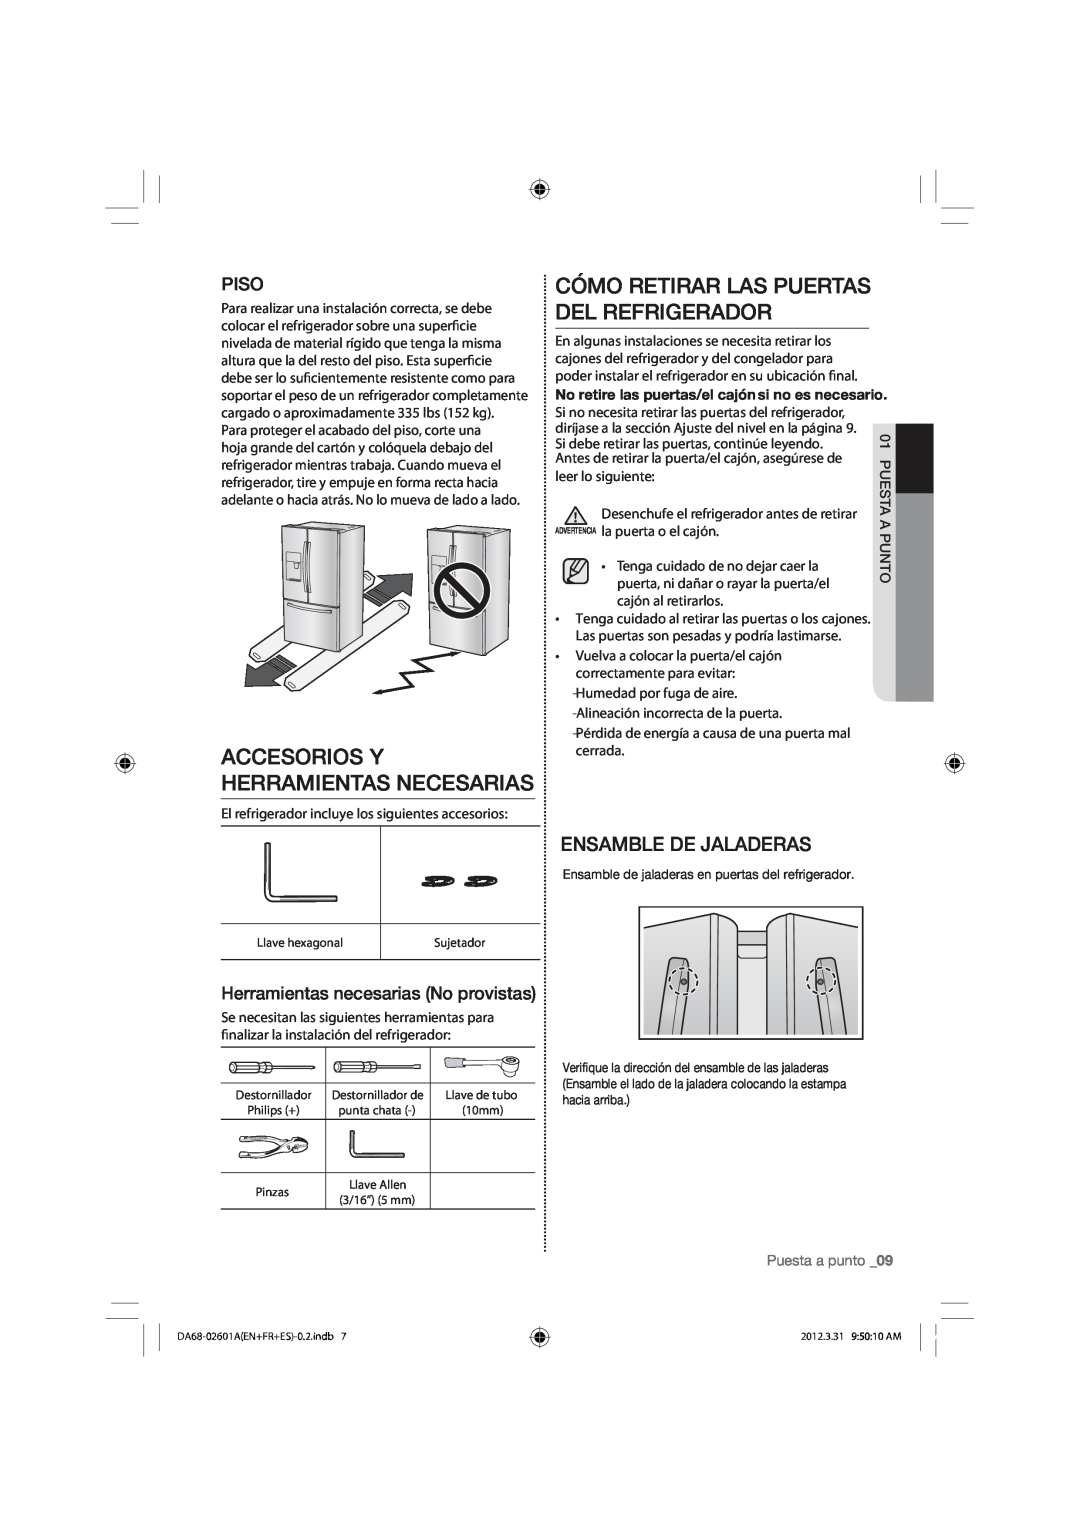 Samsung RF263BEAESR Cómo Retirar Las Puertas Del Refrigerador, Accesorios Y Herramientas Necesarias, Ensamble De Jaladeras 